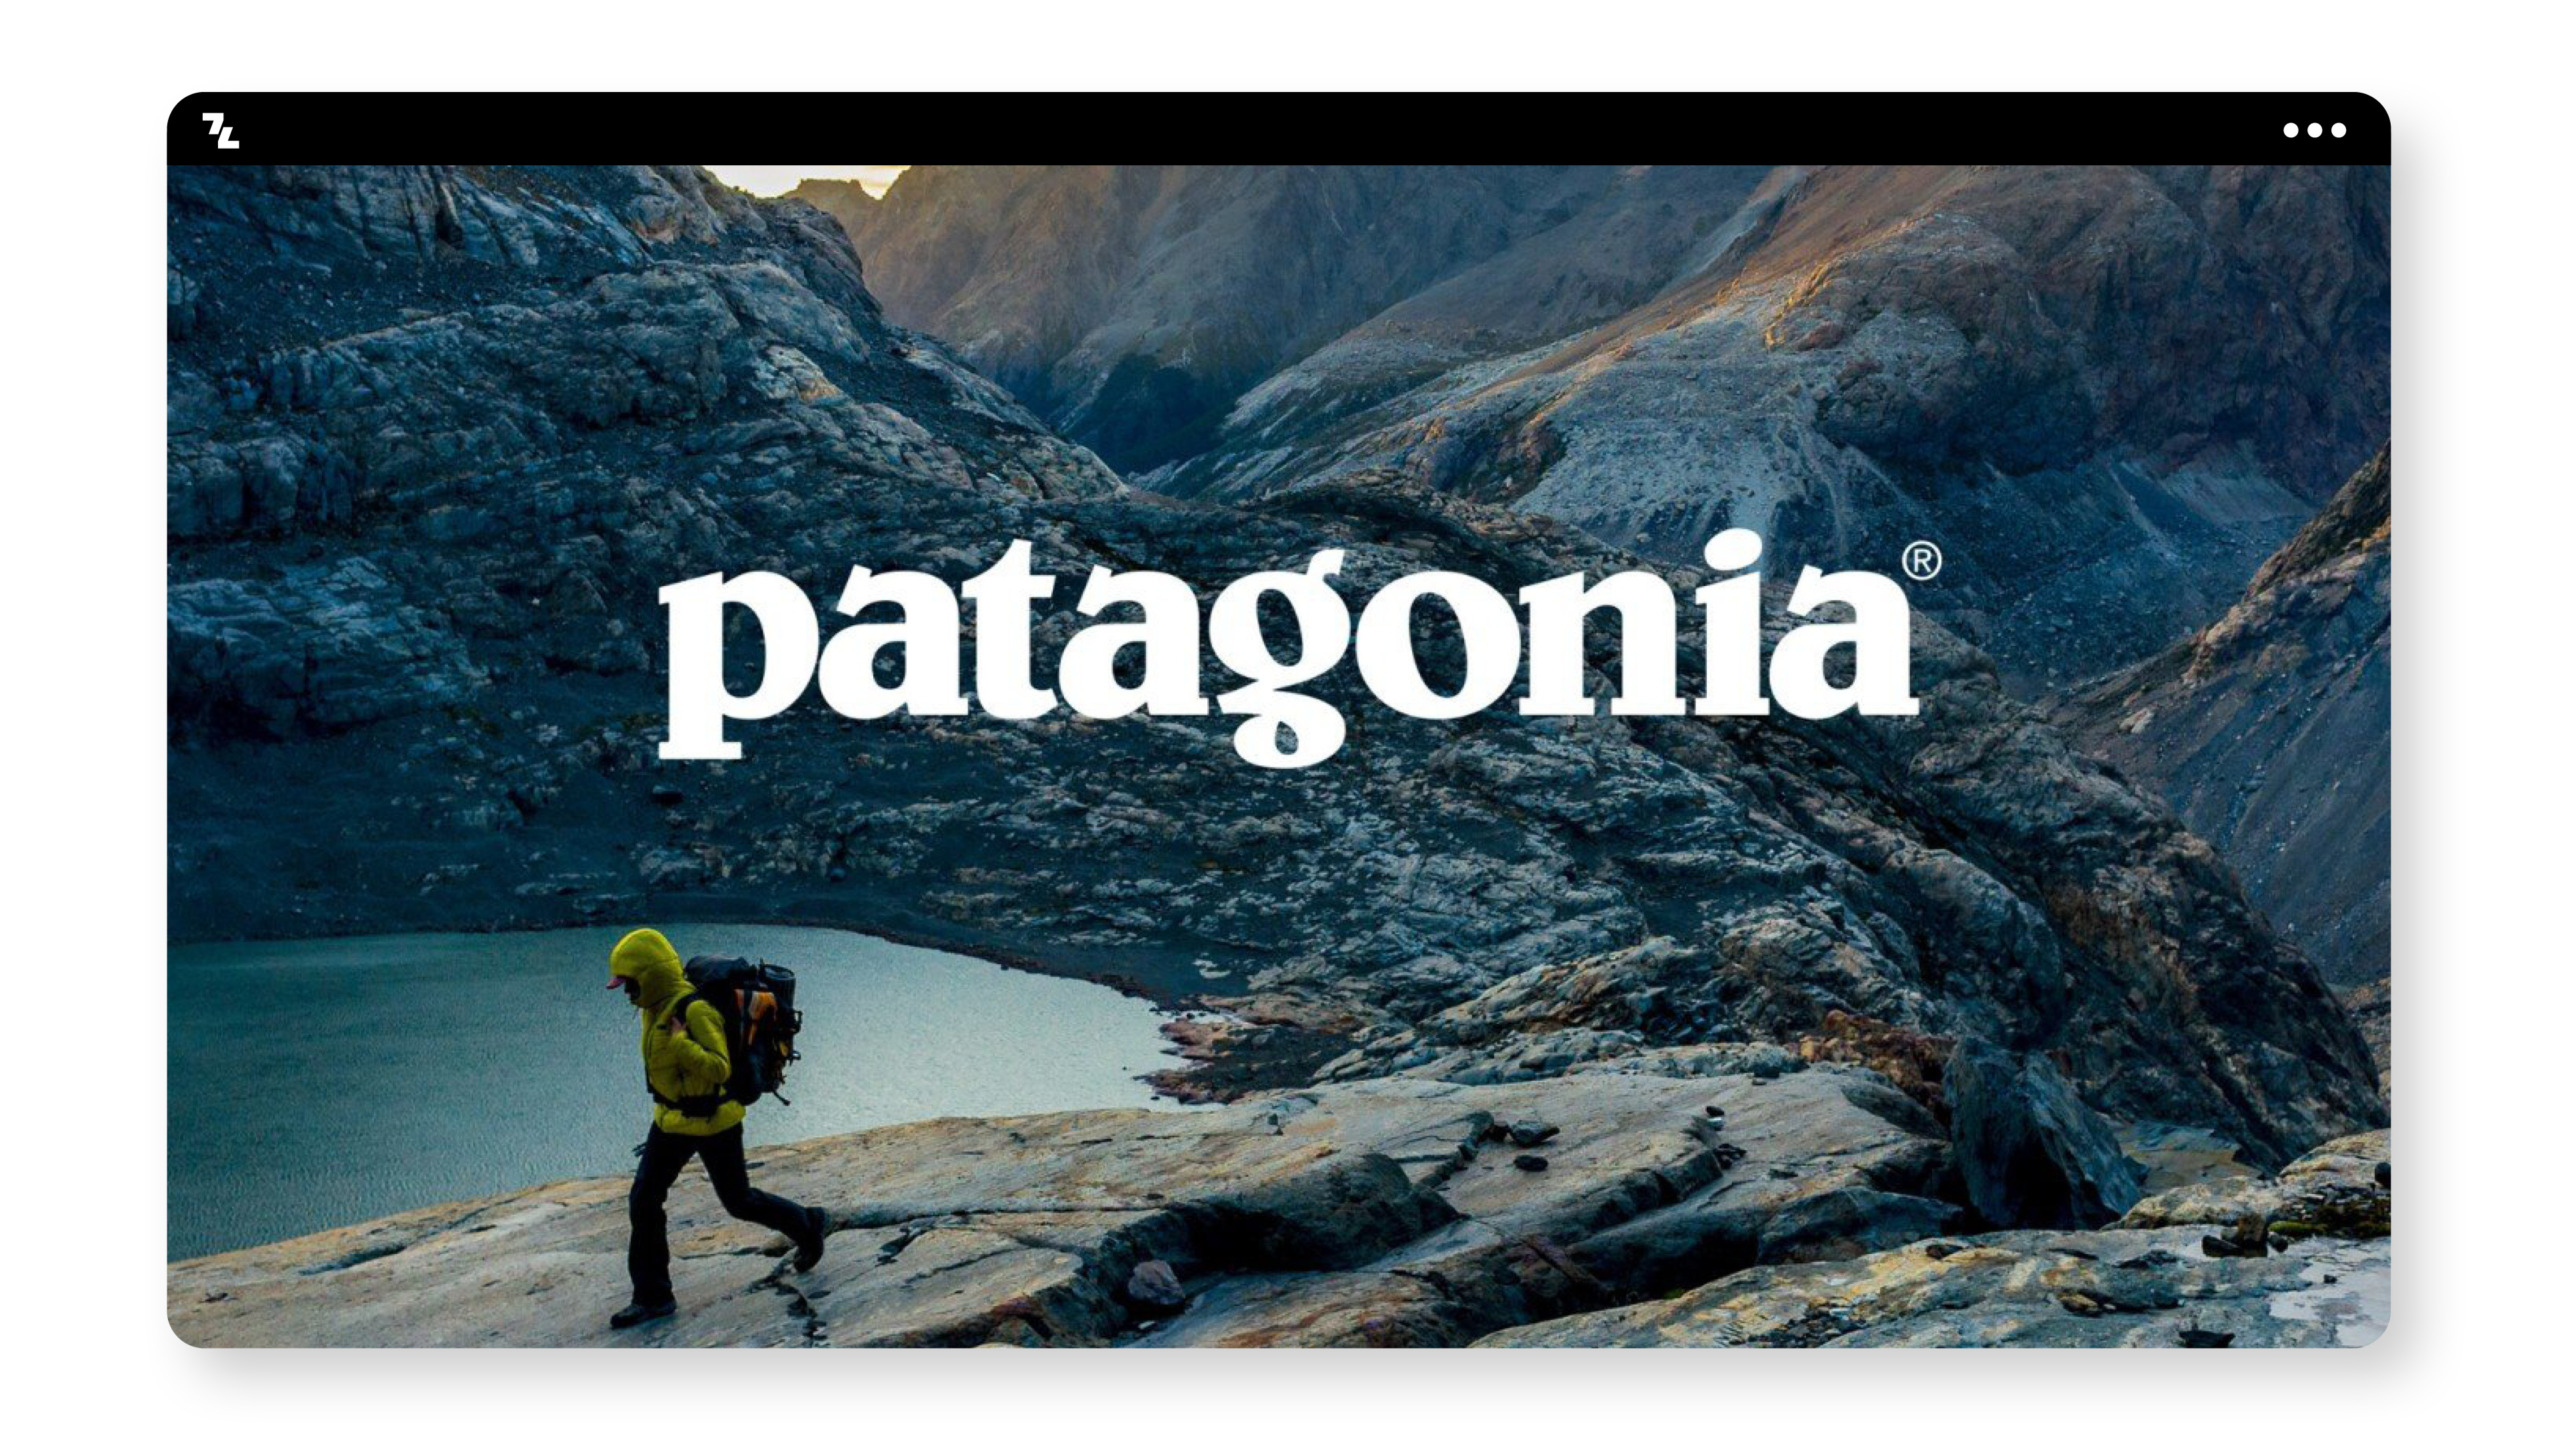 Die Patagonia-Website präsentiert nachhaltiges Branding auf einem Berg.